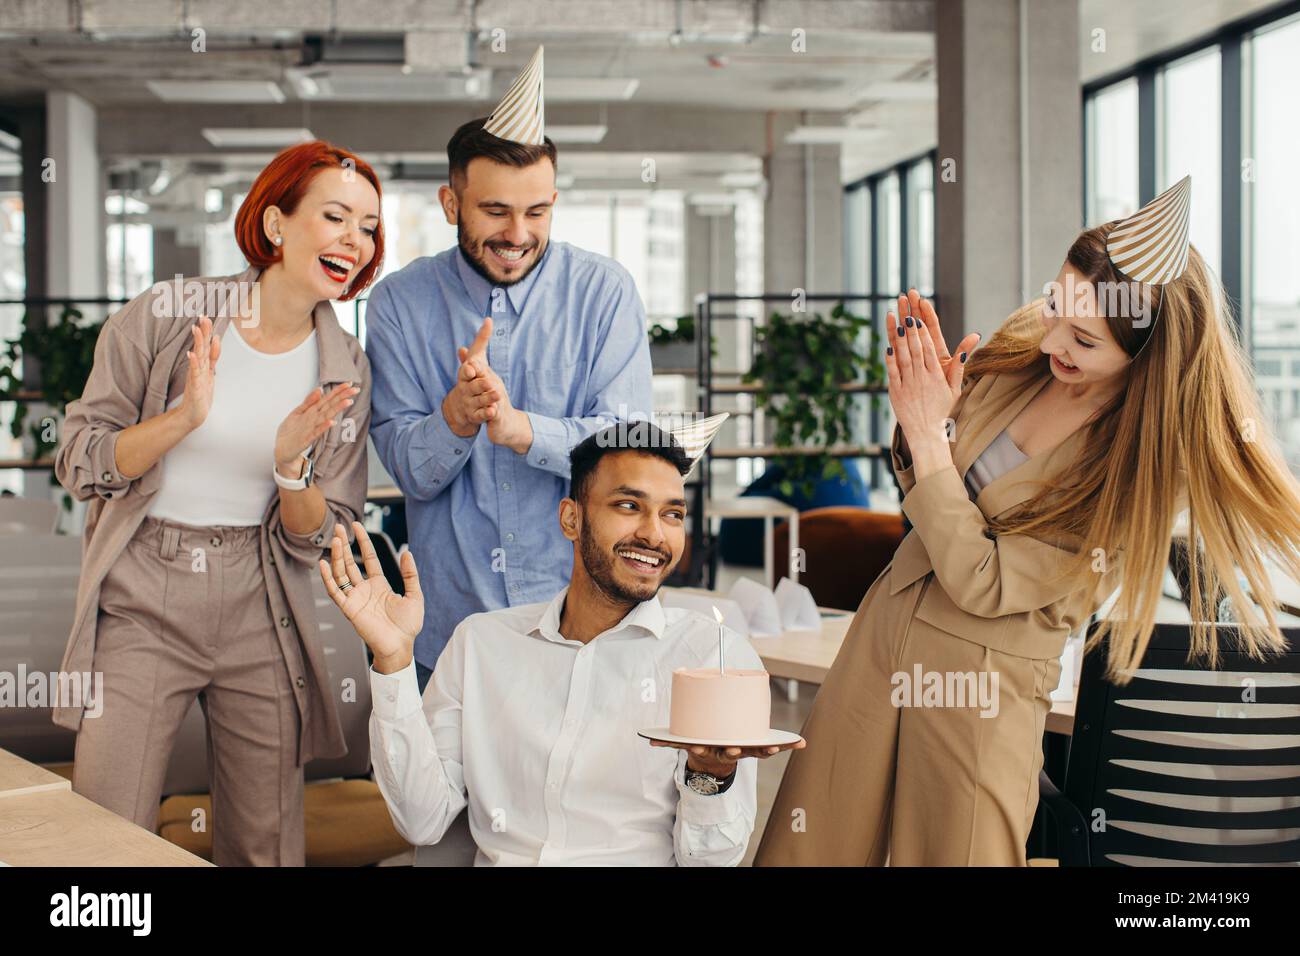 Überraschung. Gemischte Rassen glückliche Menschen feiern den Geburtstag eines Kollegen in einem modernen Büro Stockfoto